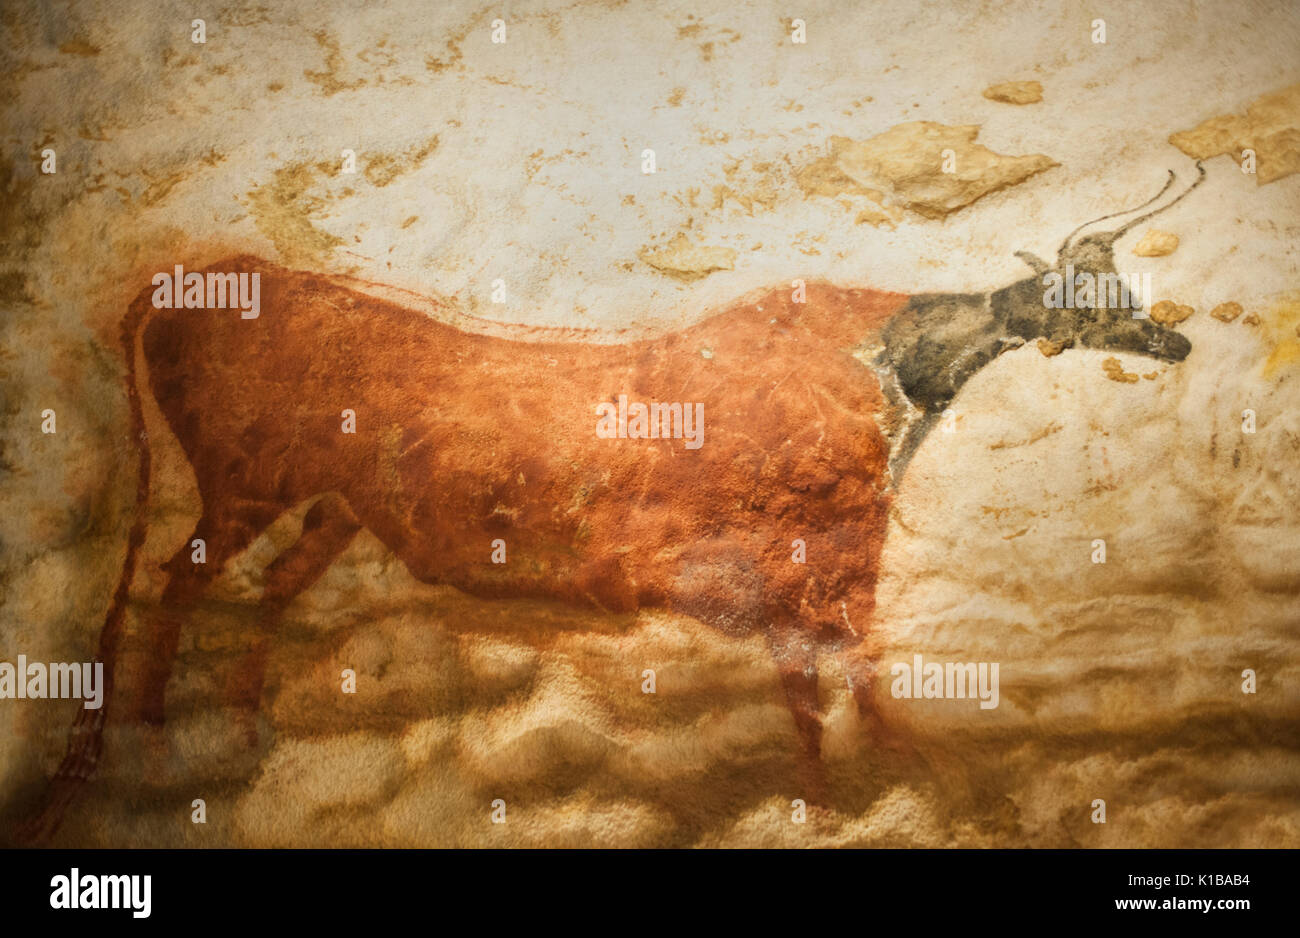 Peintures rupestres préhistoriques d'aujourd'hui disparu (auroch taureau sauvage), grottes de Lascaux IV, perigord, Montignac, Dordogne, France Banque D'Images